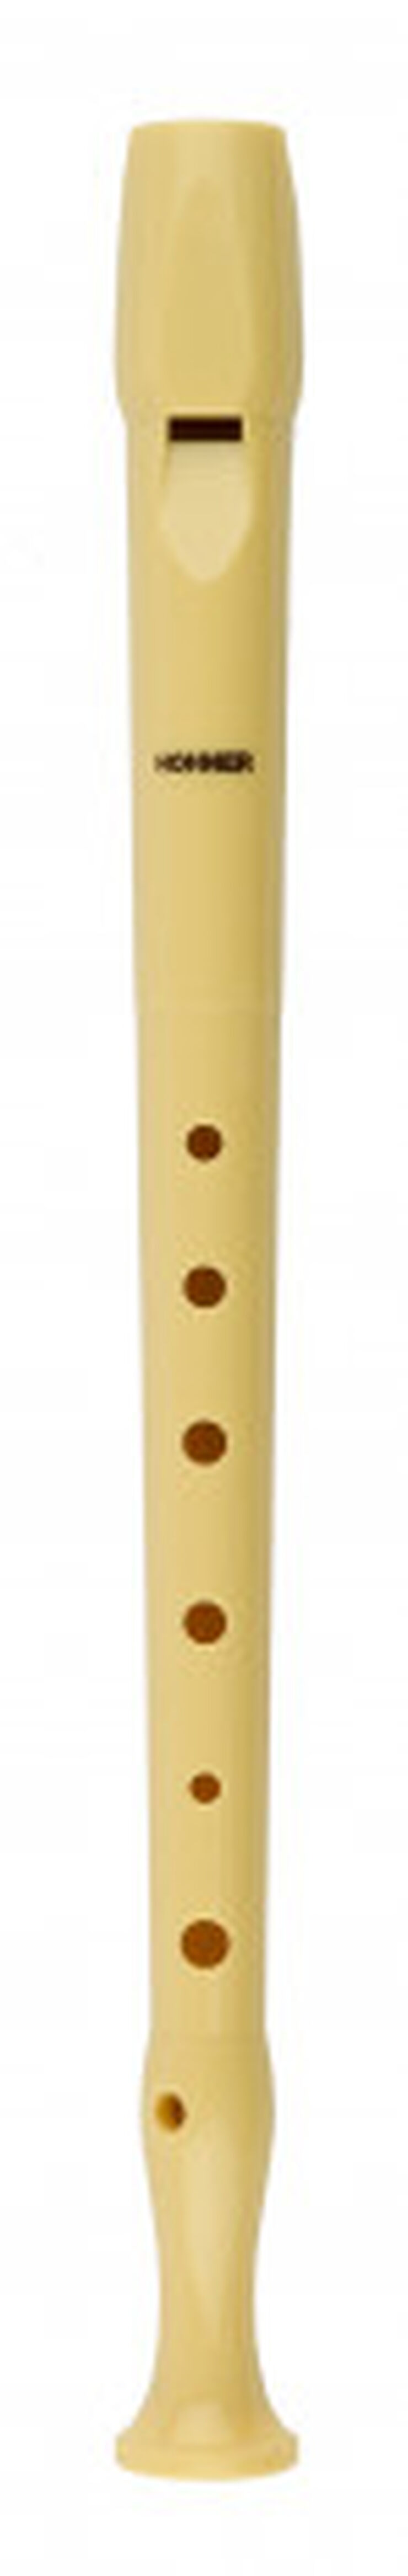 Flauta Yamaha Barroca yrs-24B